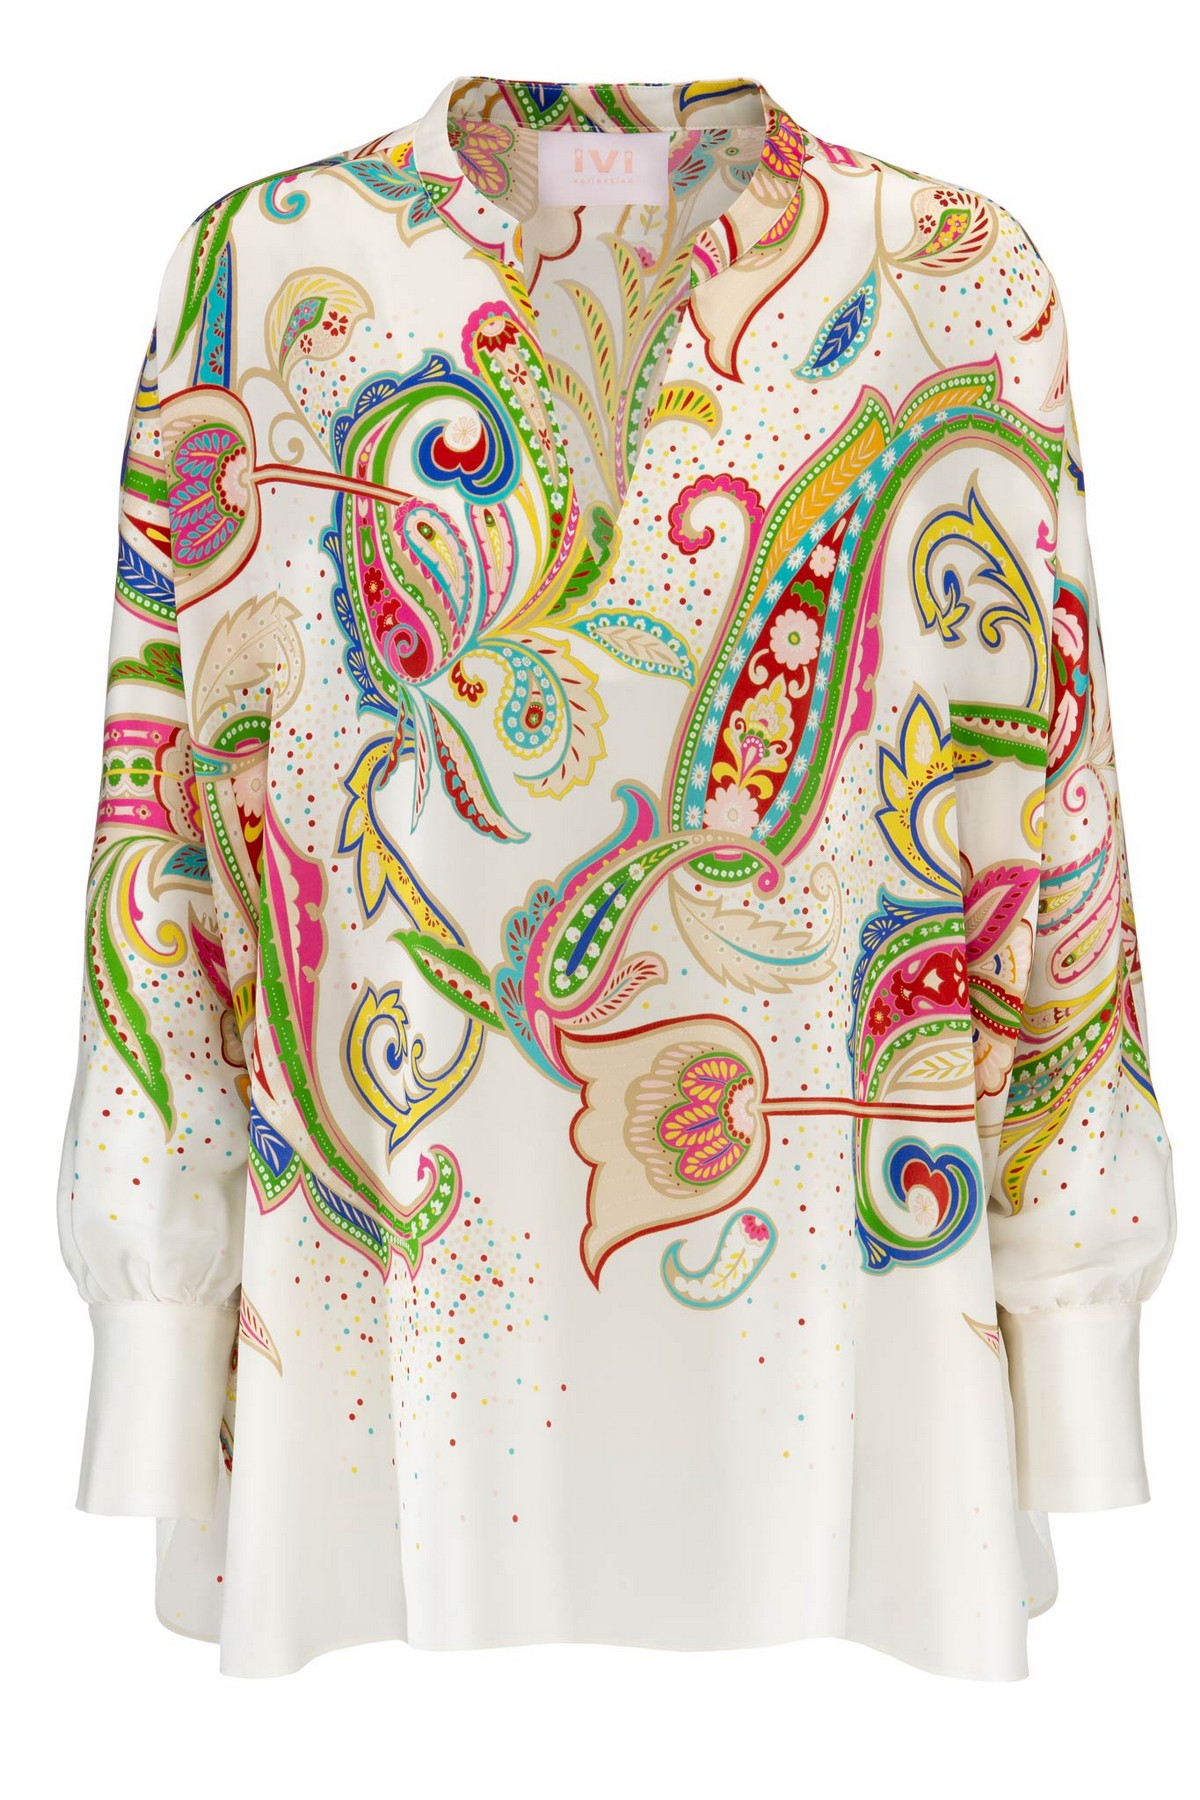 Shirtbloes paisley in de kleur wit multicolor van het merk Ivi Collection